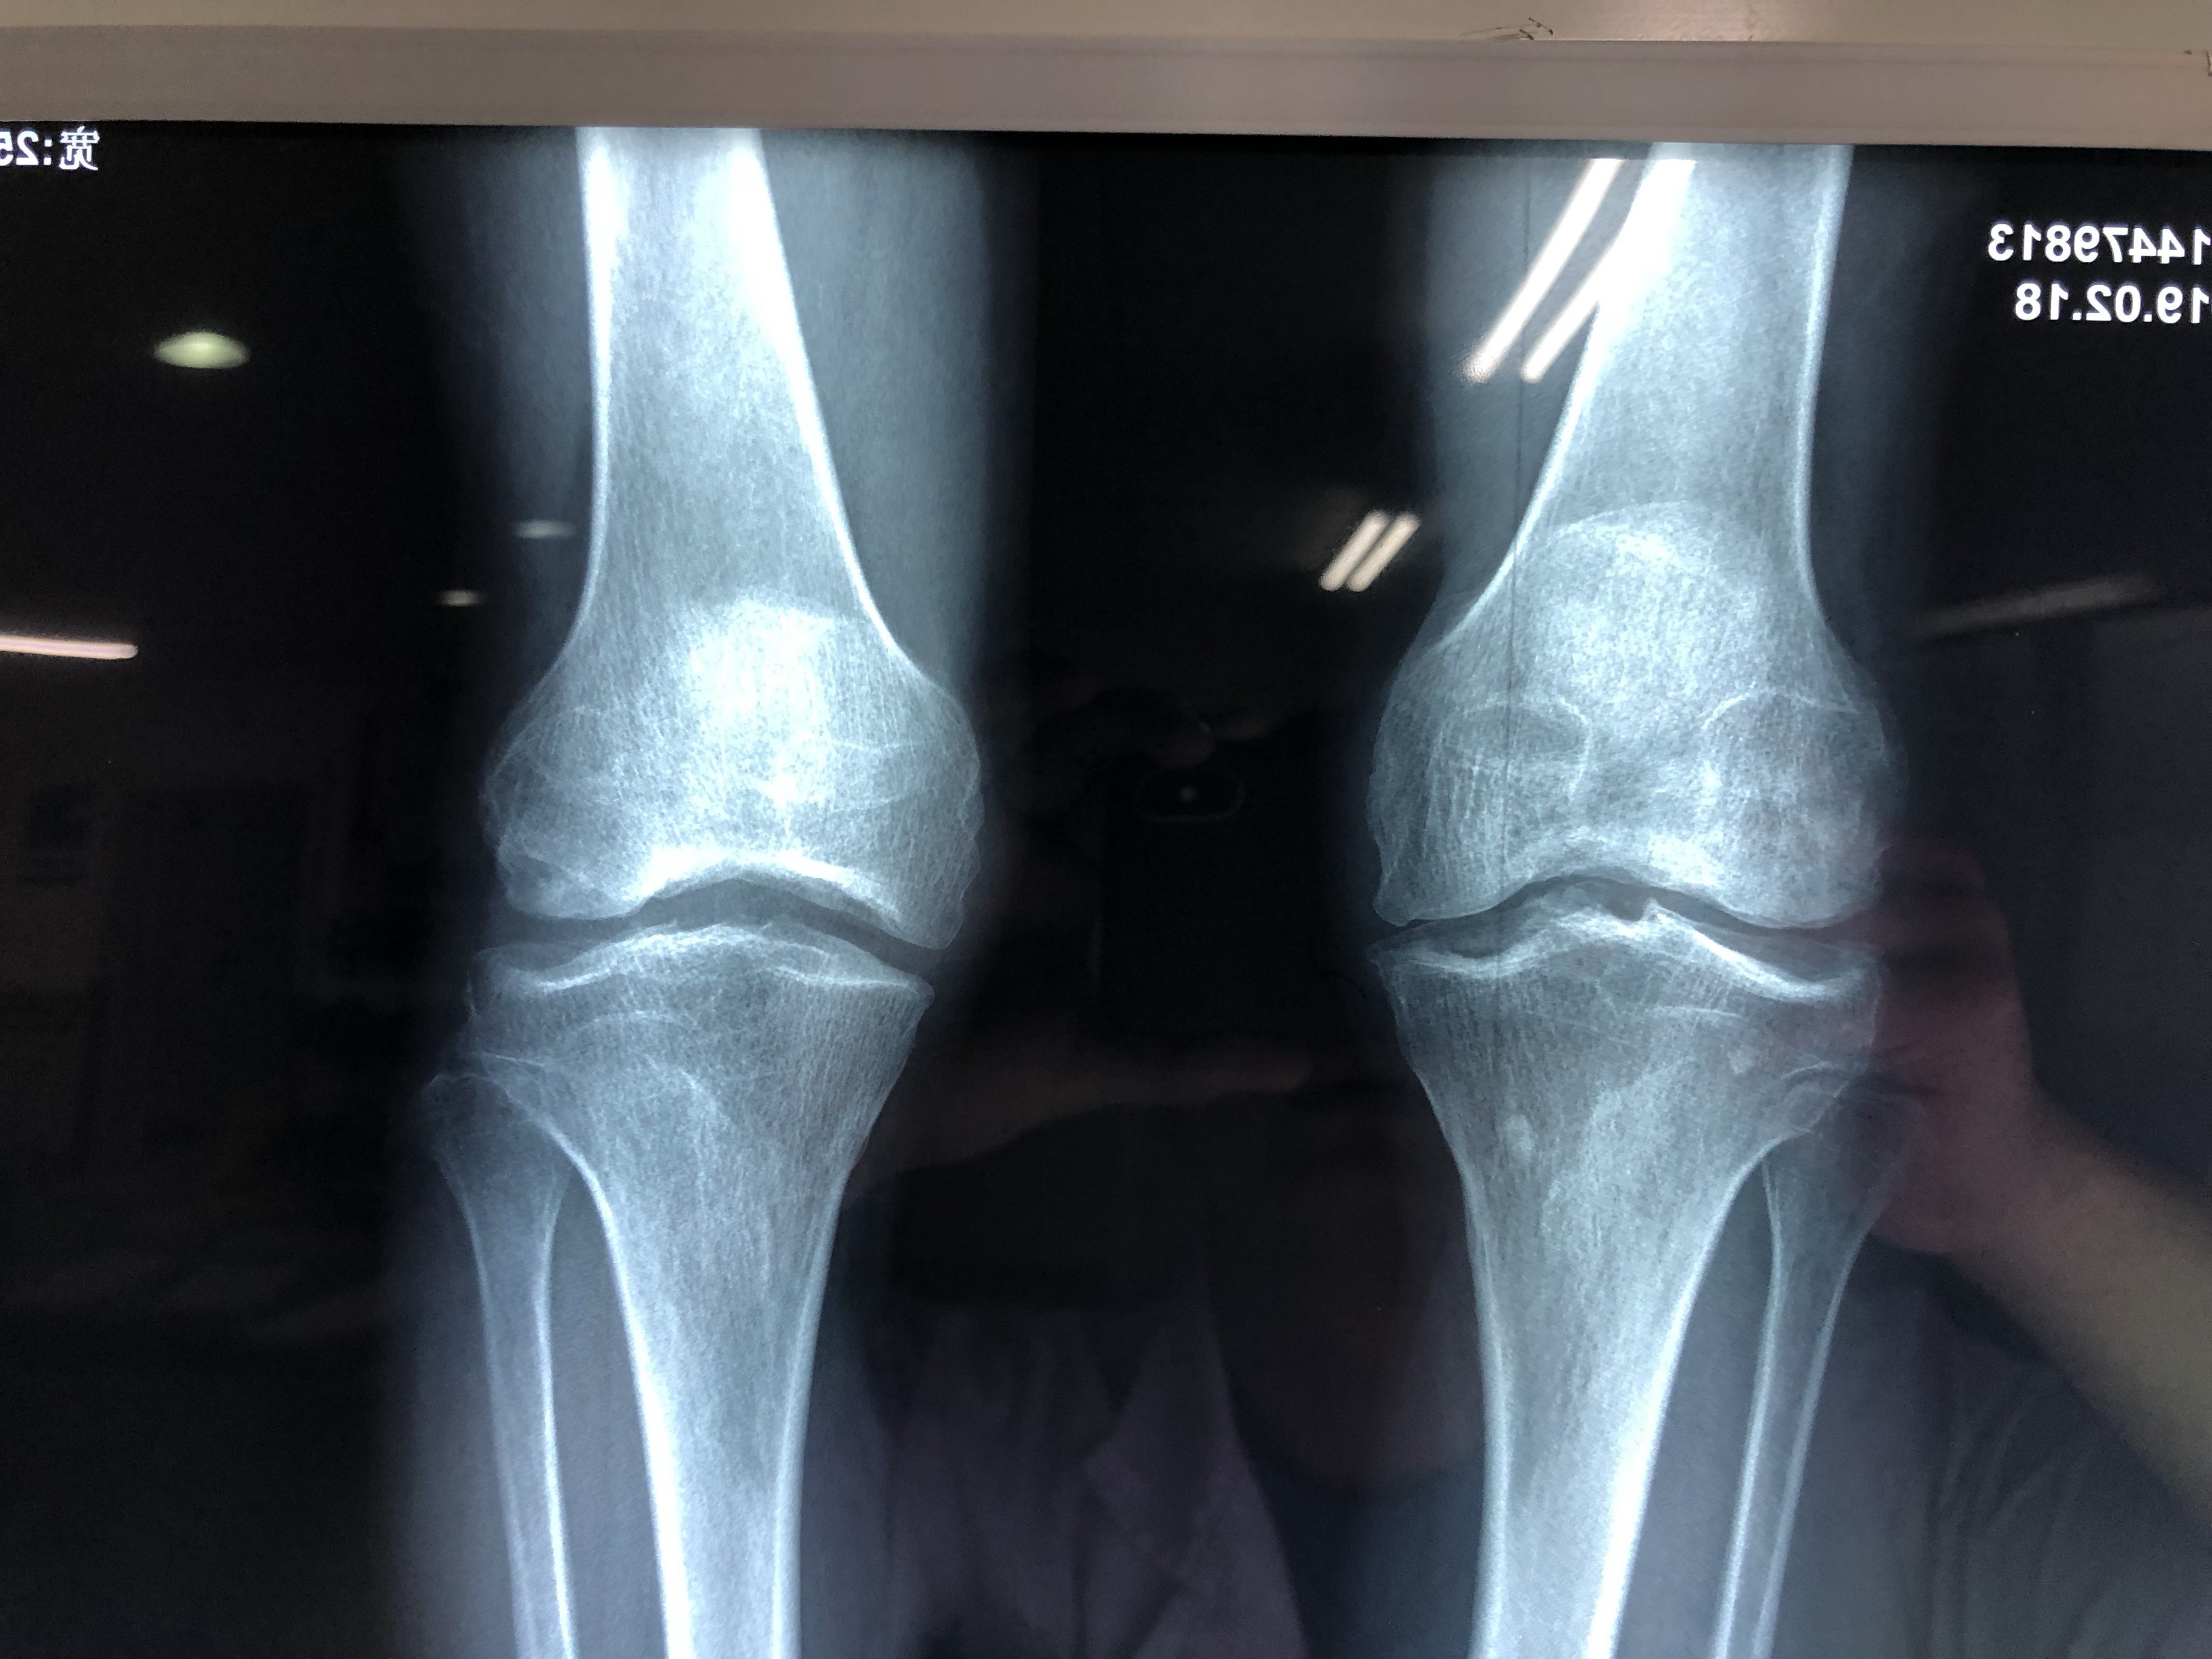 中年男患,双膝骨性关节炎伴有半月板损伤